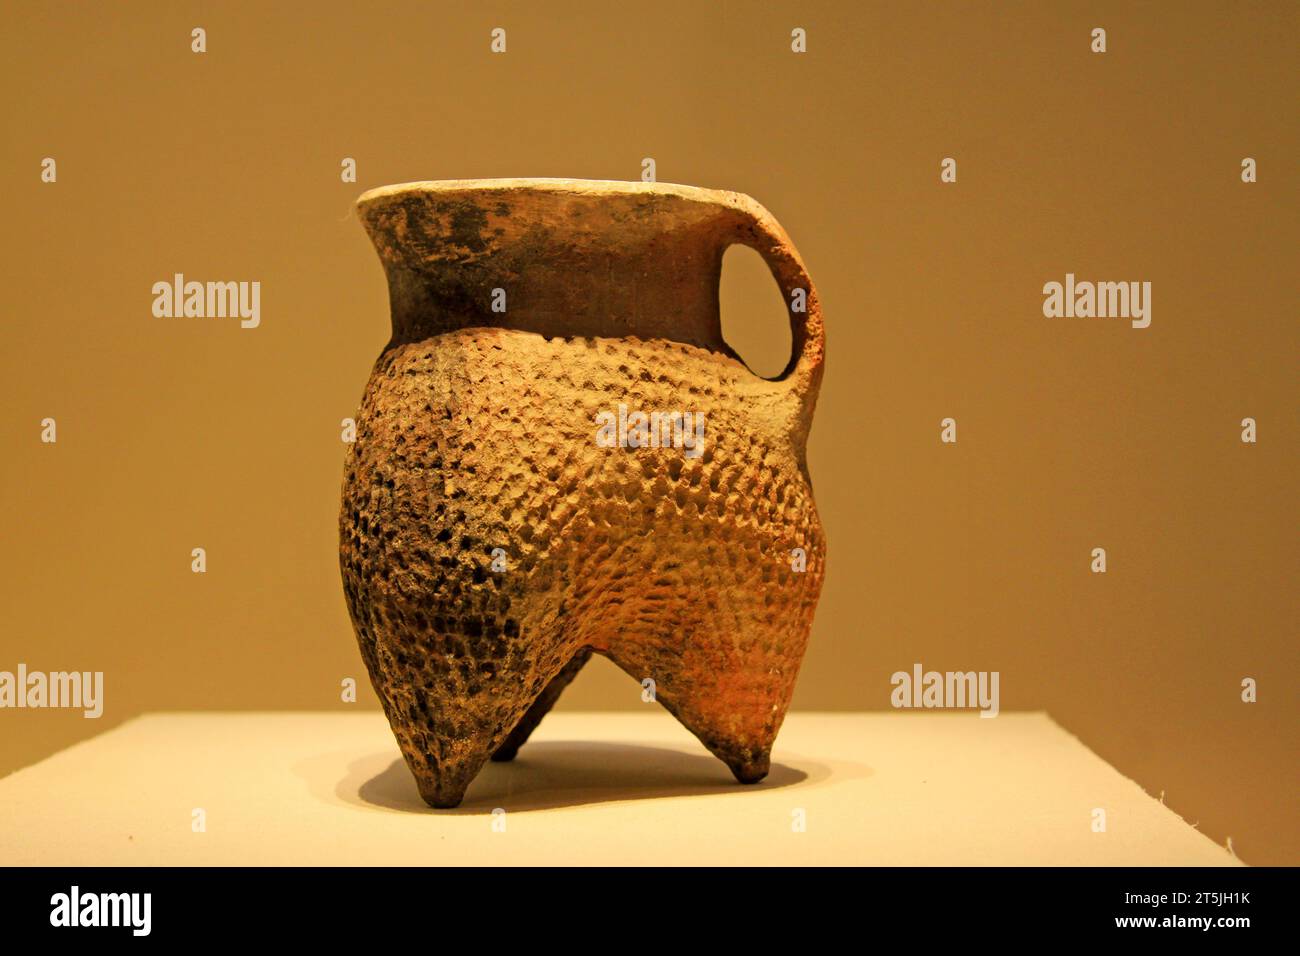 CHINE - KESHENGZHUANG CULUTURE (C. 2500-2000 av. J.-C.) : Pottery Li (récipient de cuisson), Keshengzhuang Culture (c. 2500-2000 av. J.-C.), collection dans la Chine nat Banque D'Images